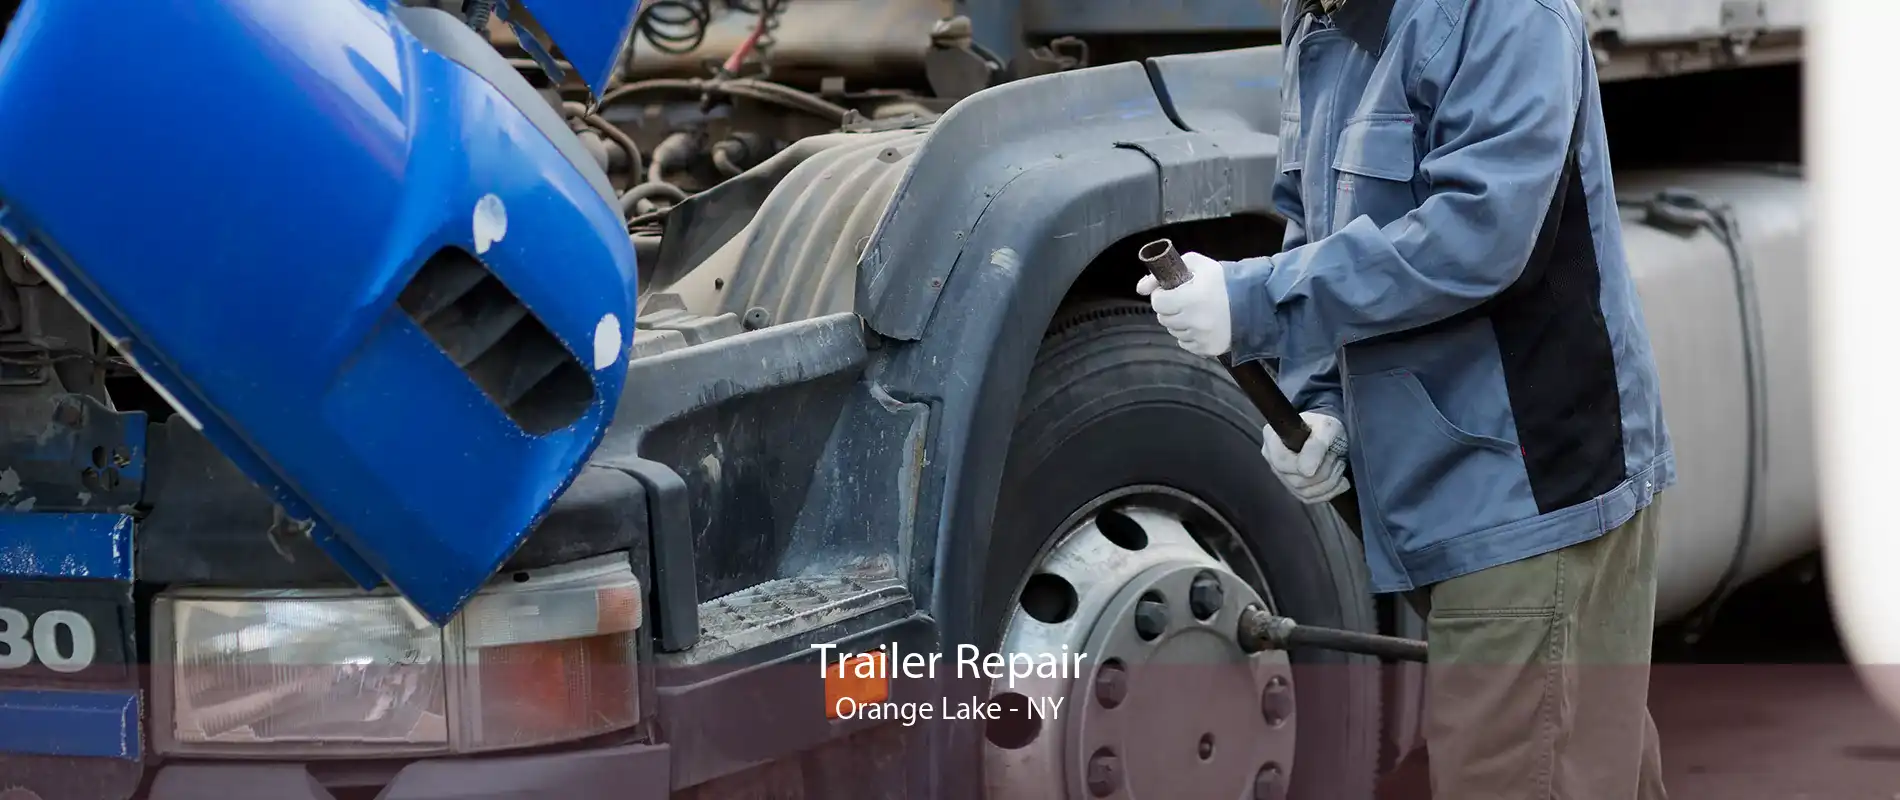 Trailer Repair Orange Lake - NY